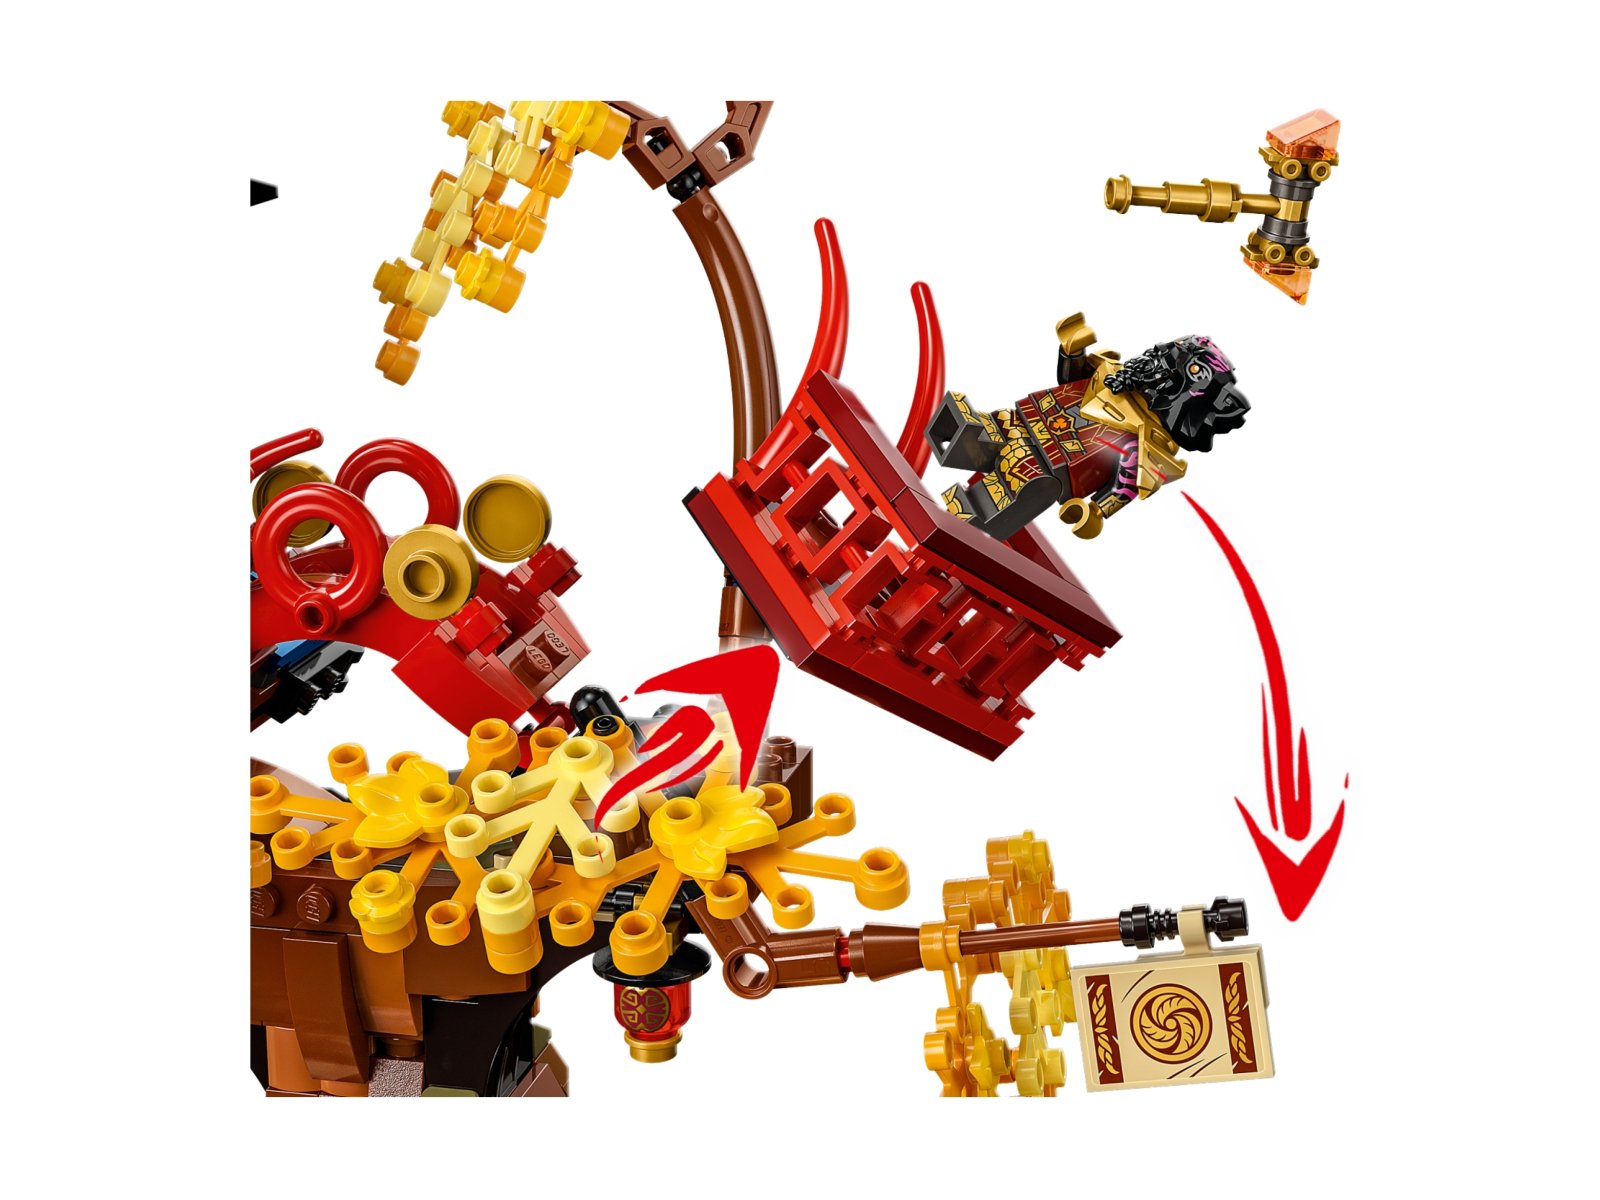 LEGO Ninjago 71795 Świątynia smoczej energii